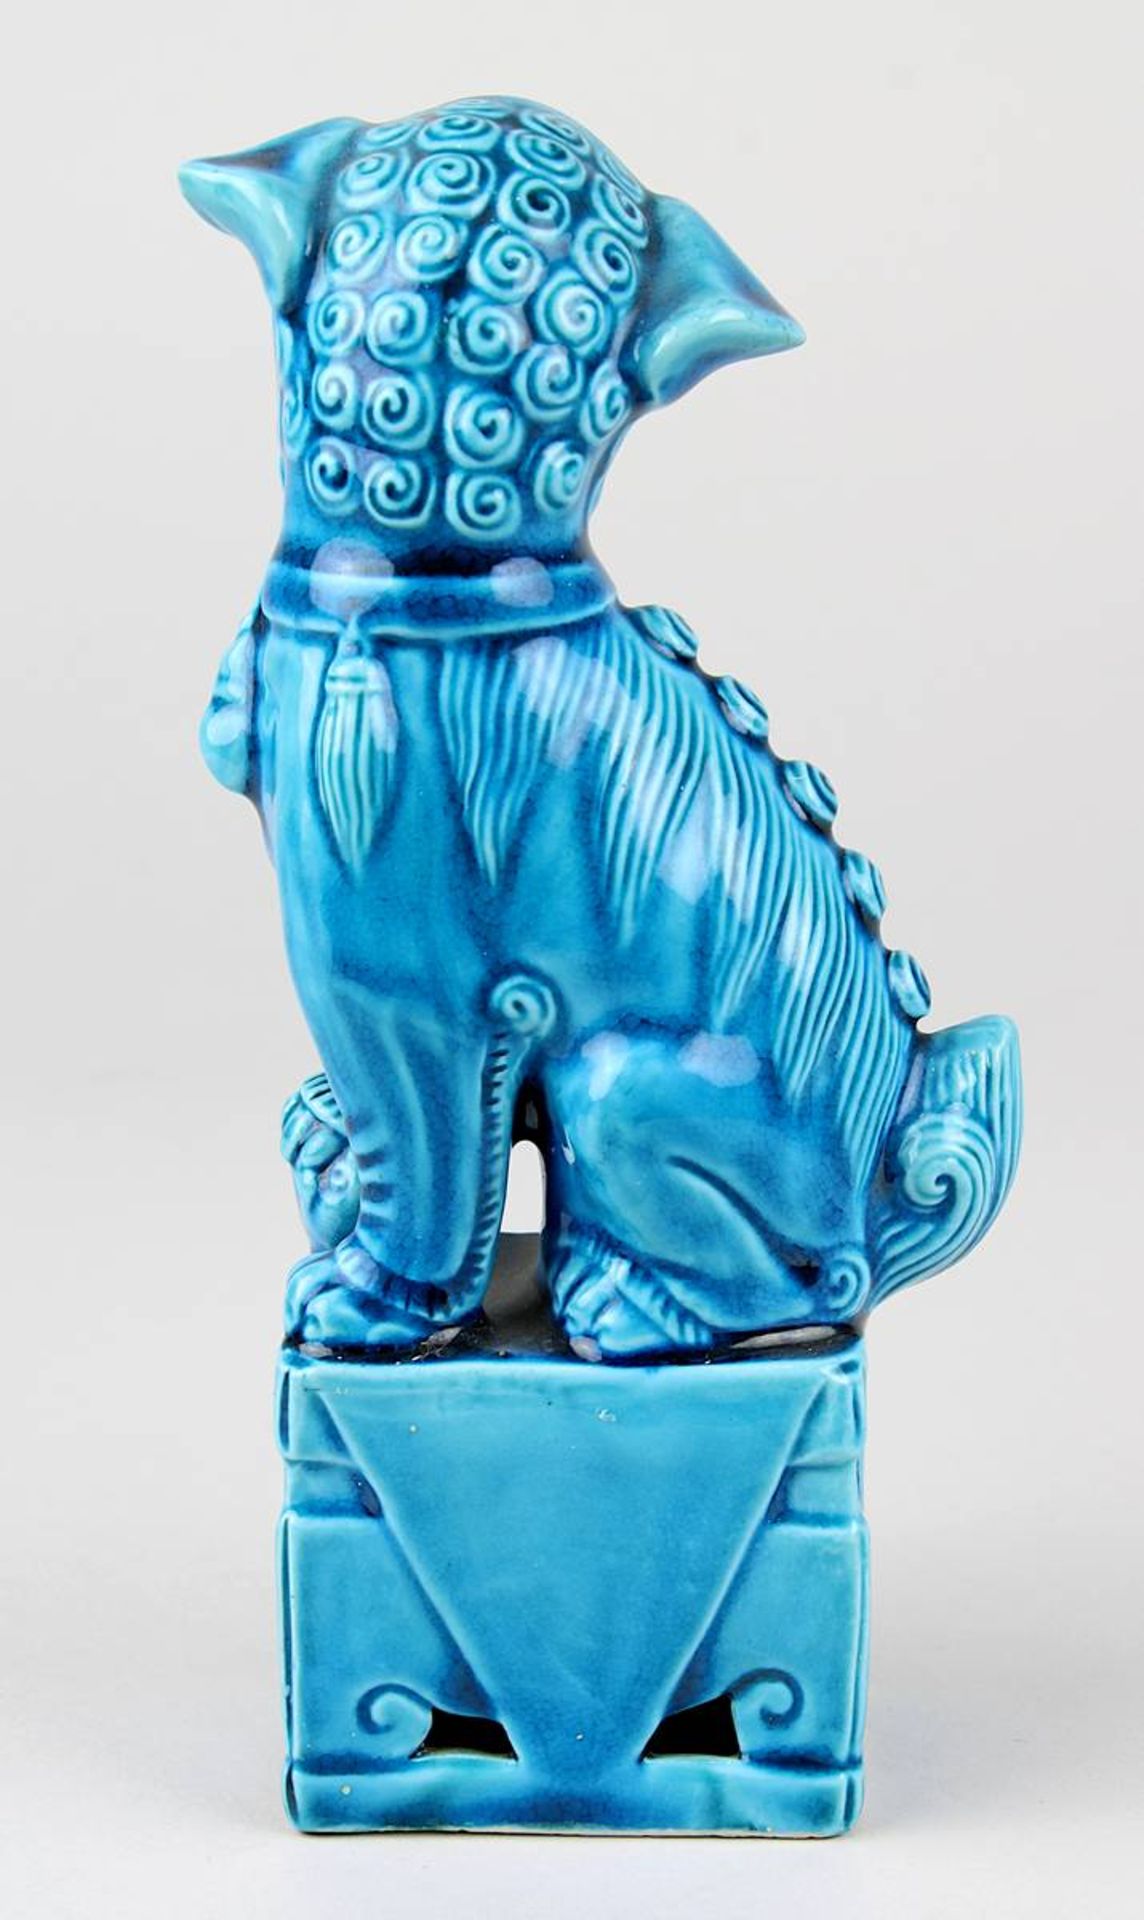 Kleiner Fo-Hund aus Porzellan, China 20. Jh., Porzellan, weißer Scherben, türkisblau glasiert, - Image 3 of 4